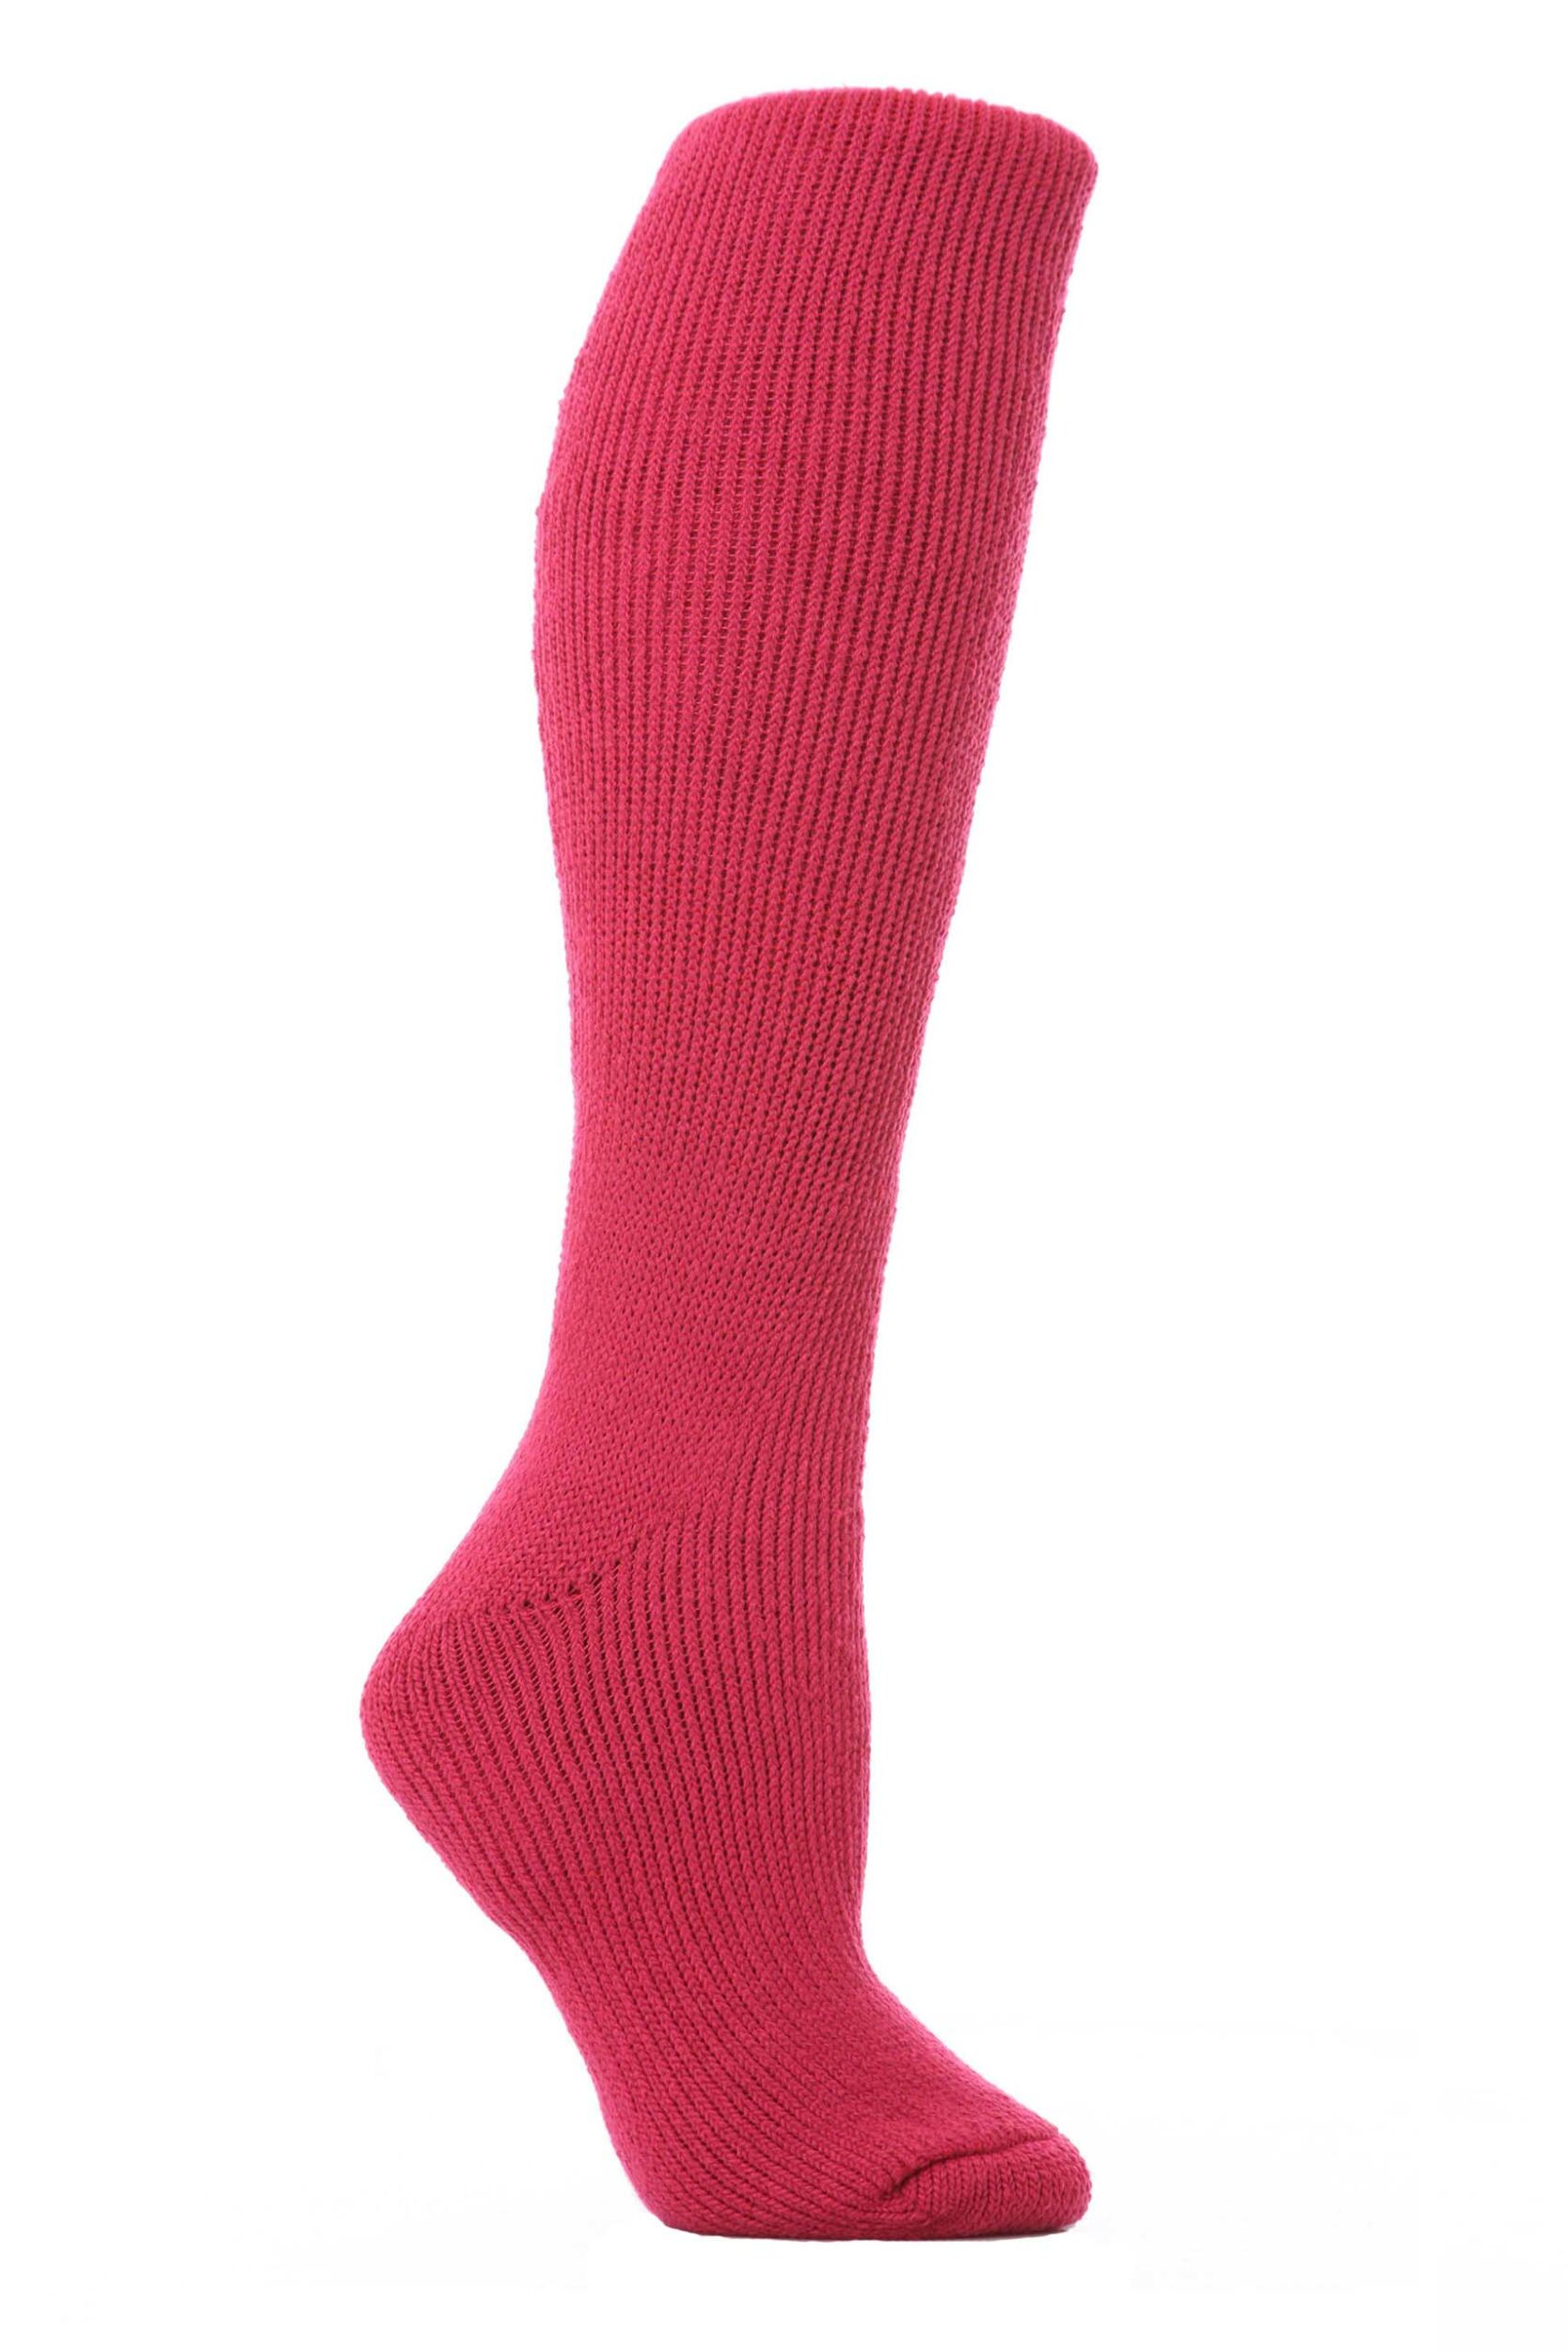 Ladies 1 Pair SockShop Long Heat Holders Thermal Socks | eBay